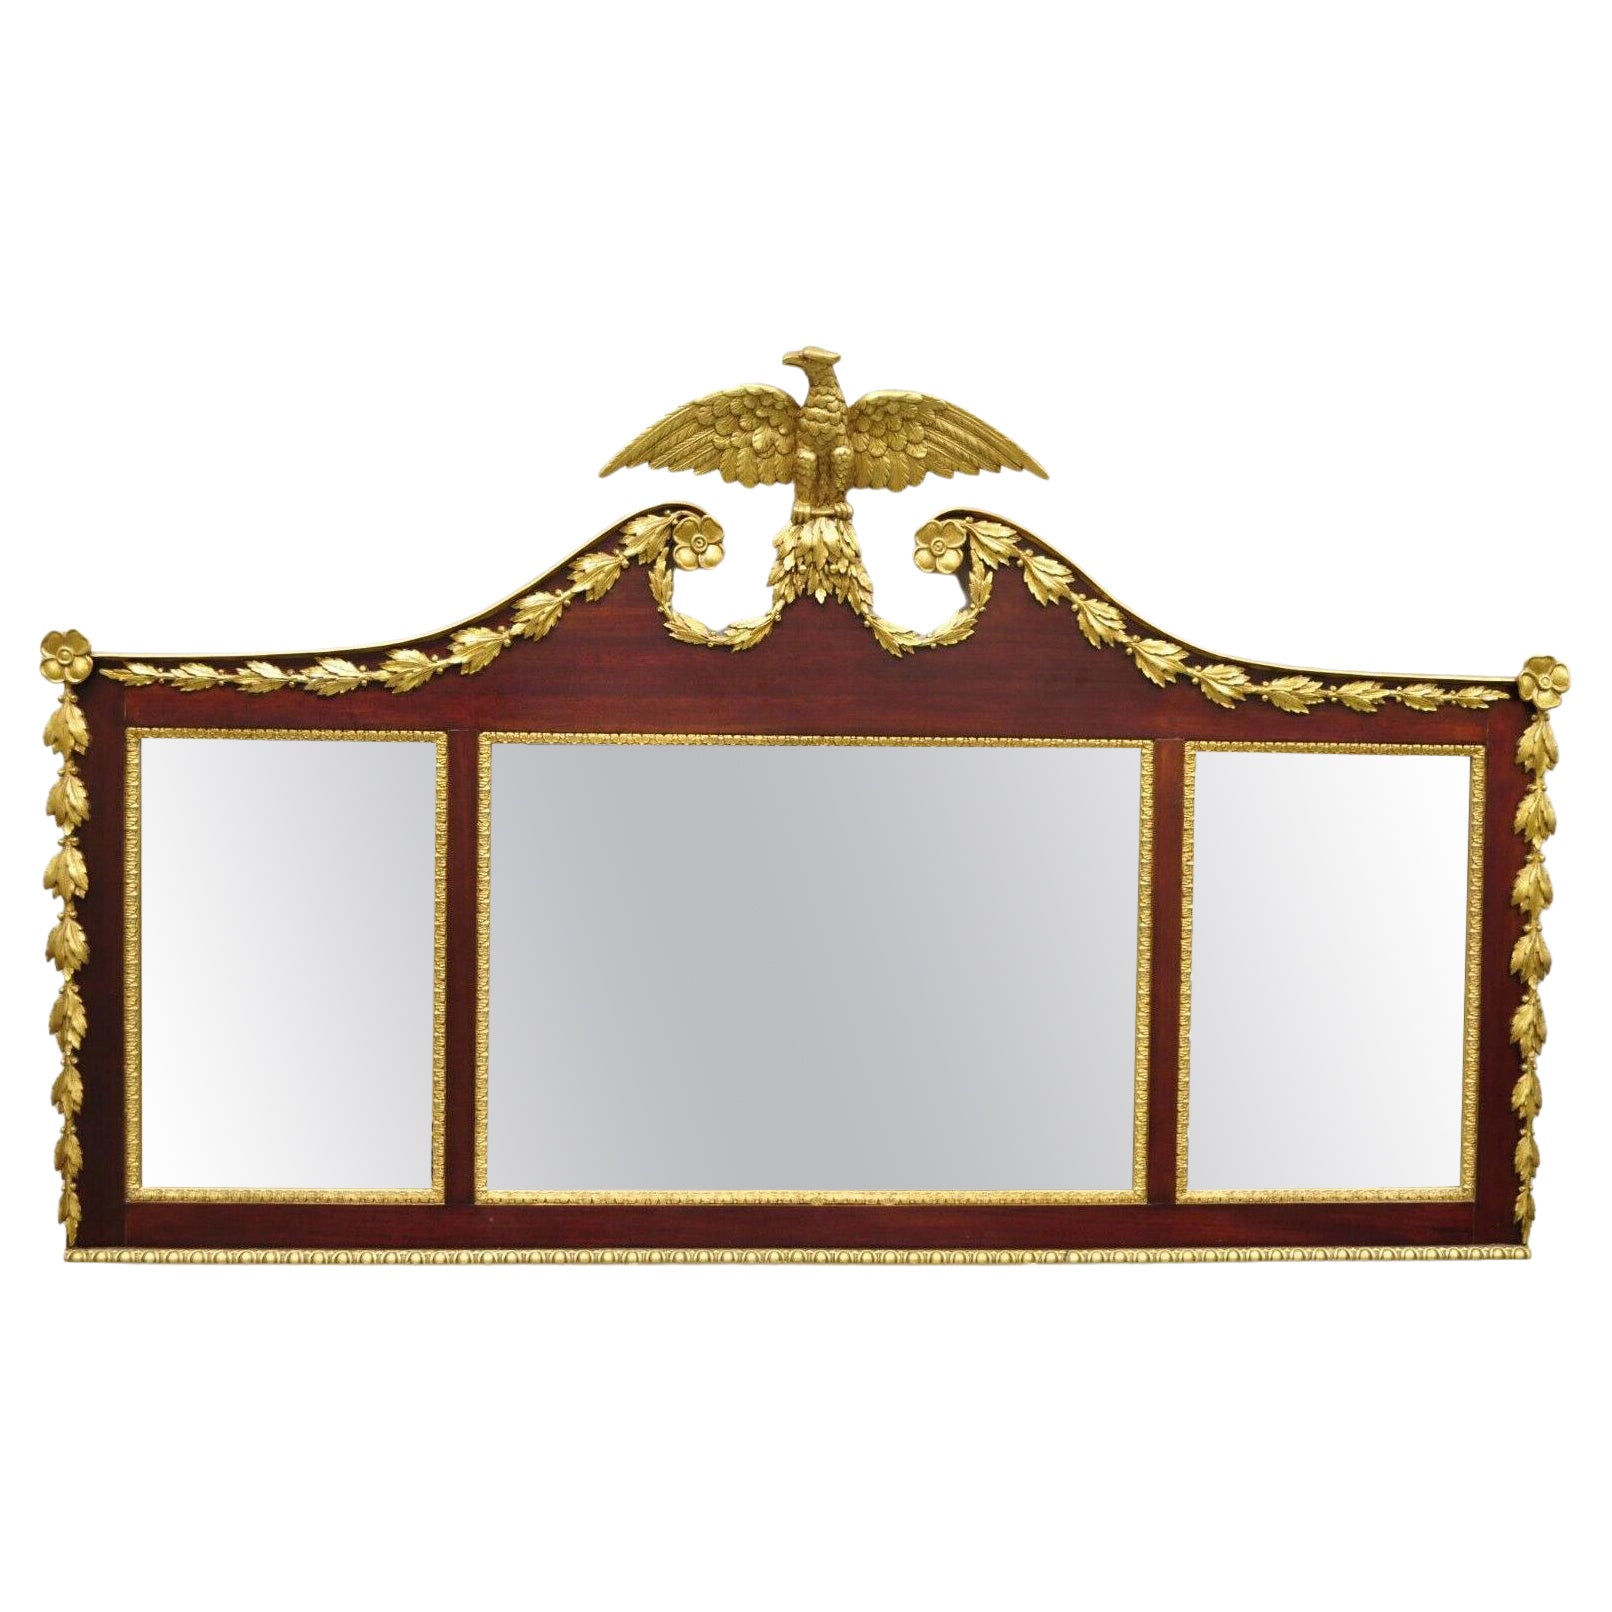 Triple miroir ancien de style fédéral américain, sculpté et doré, avec aigle en or